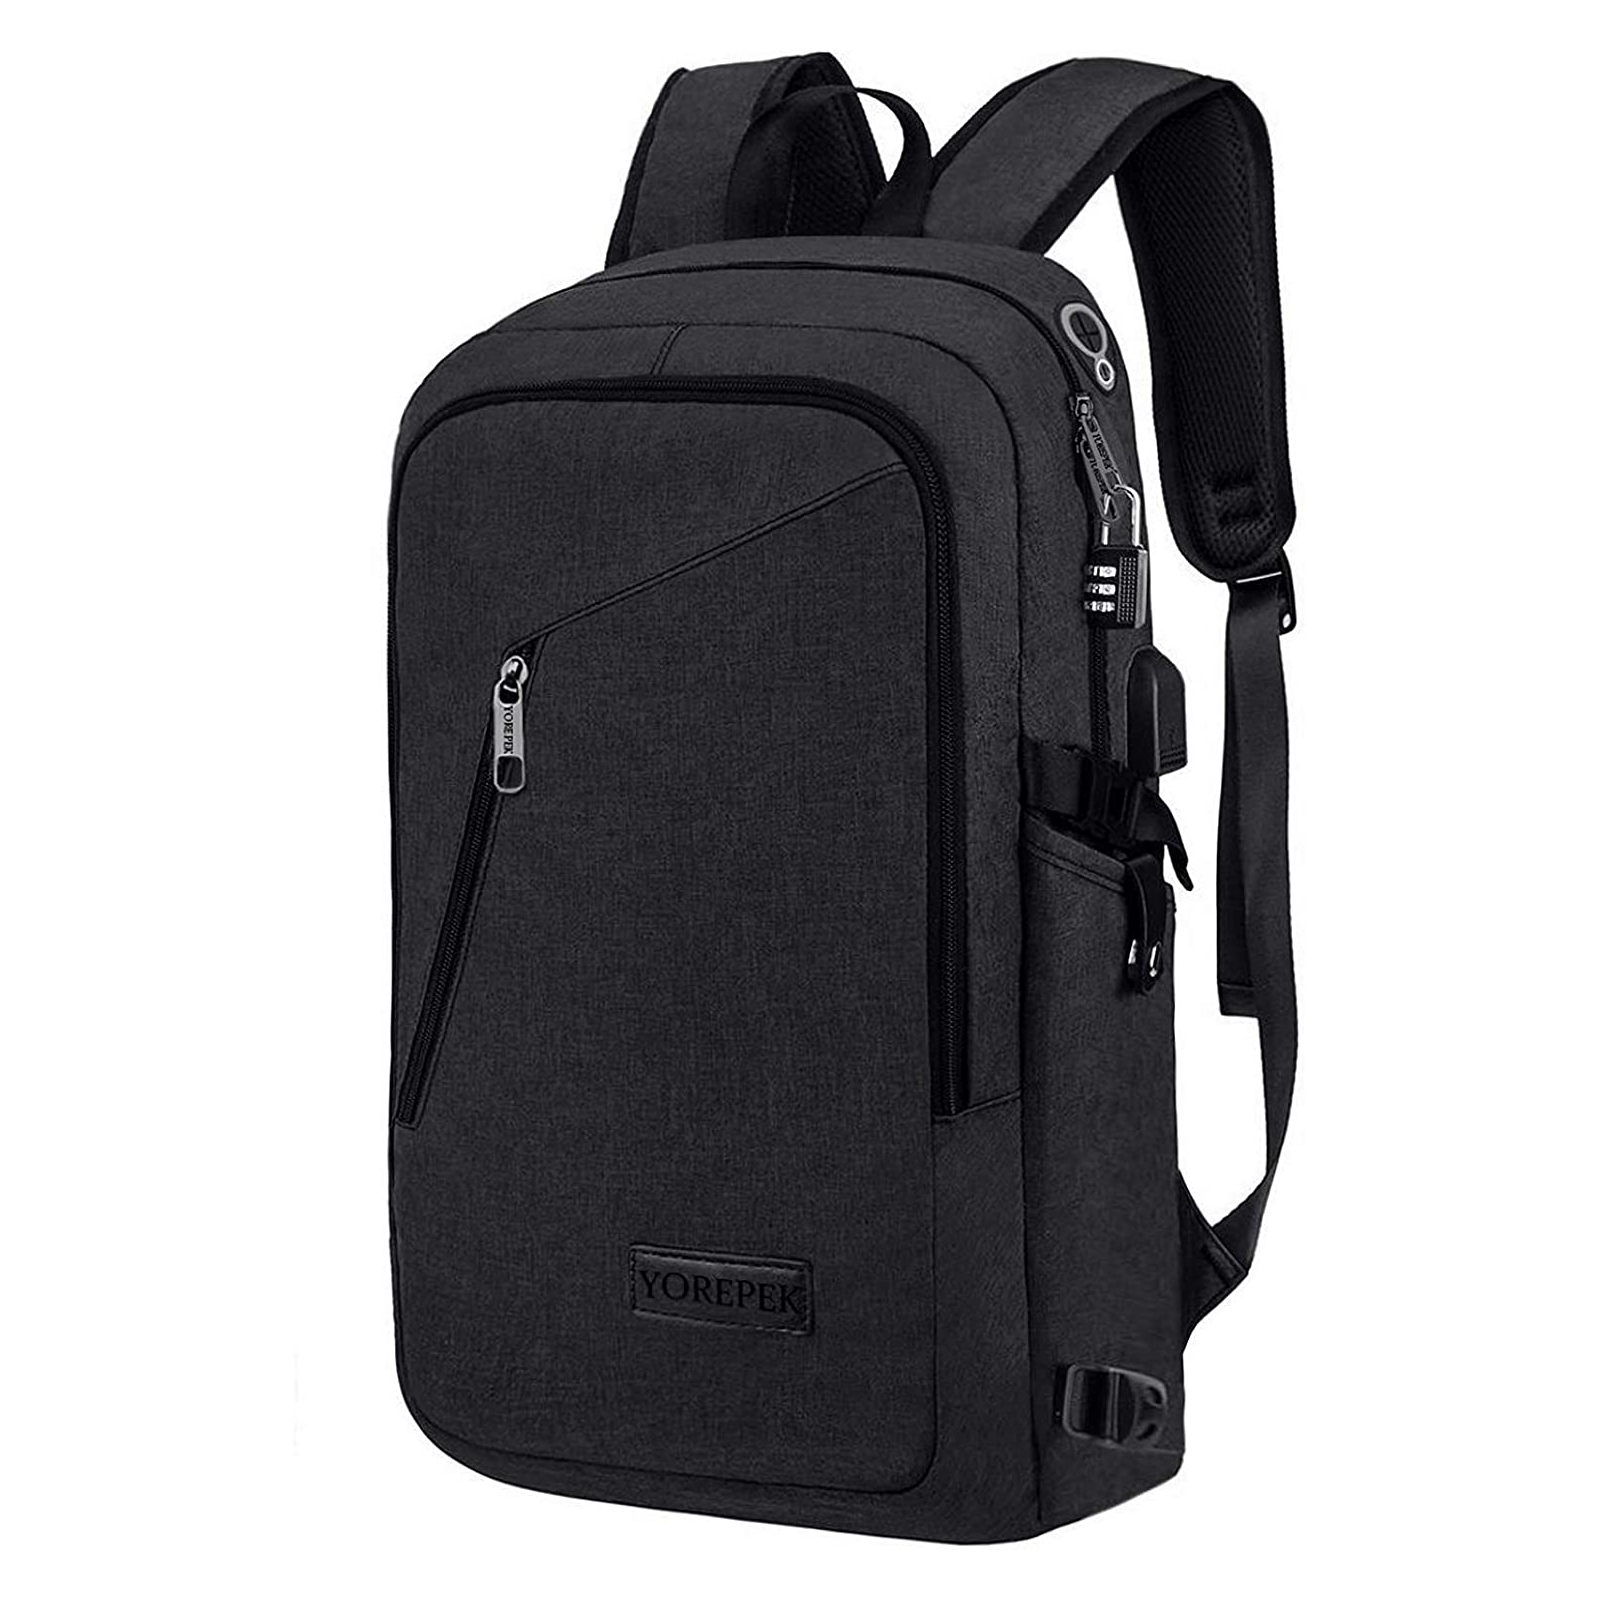 Yorepek Slim Laptop Backpack